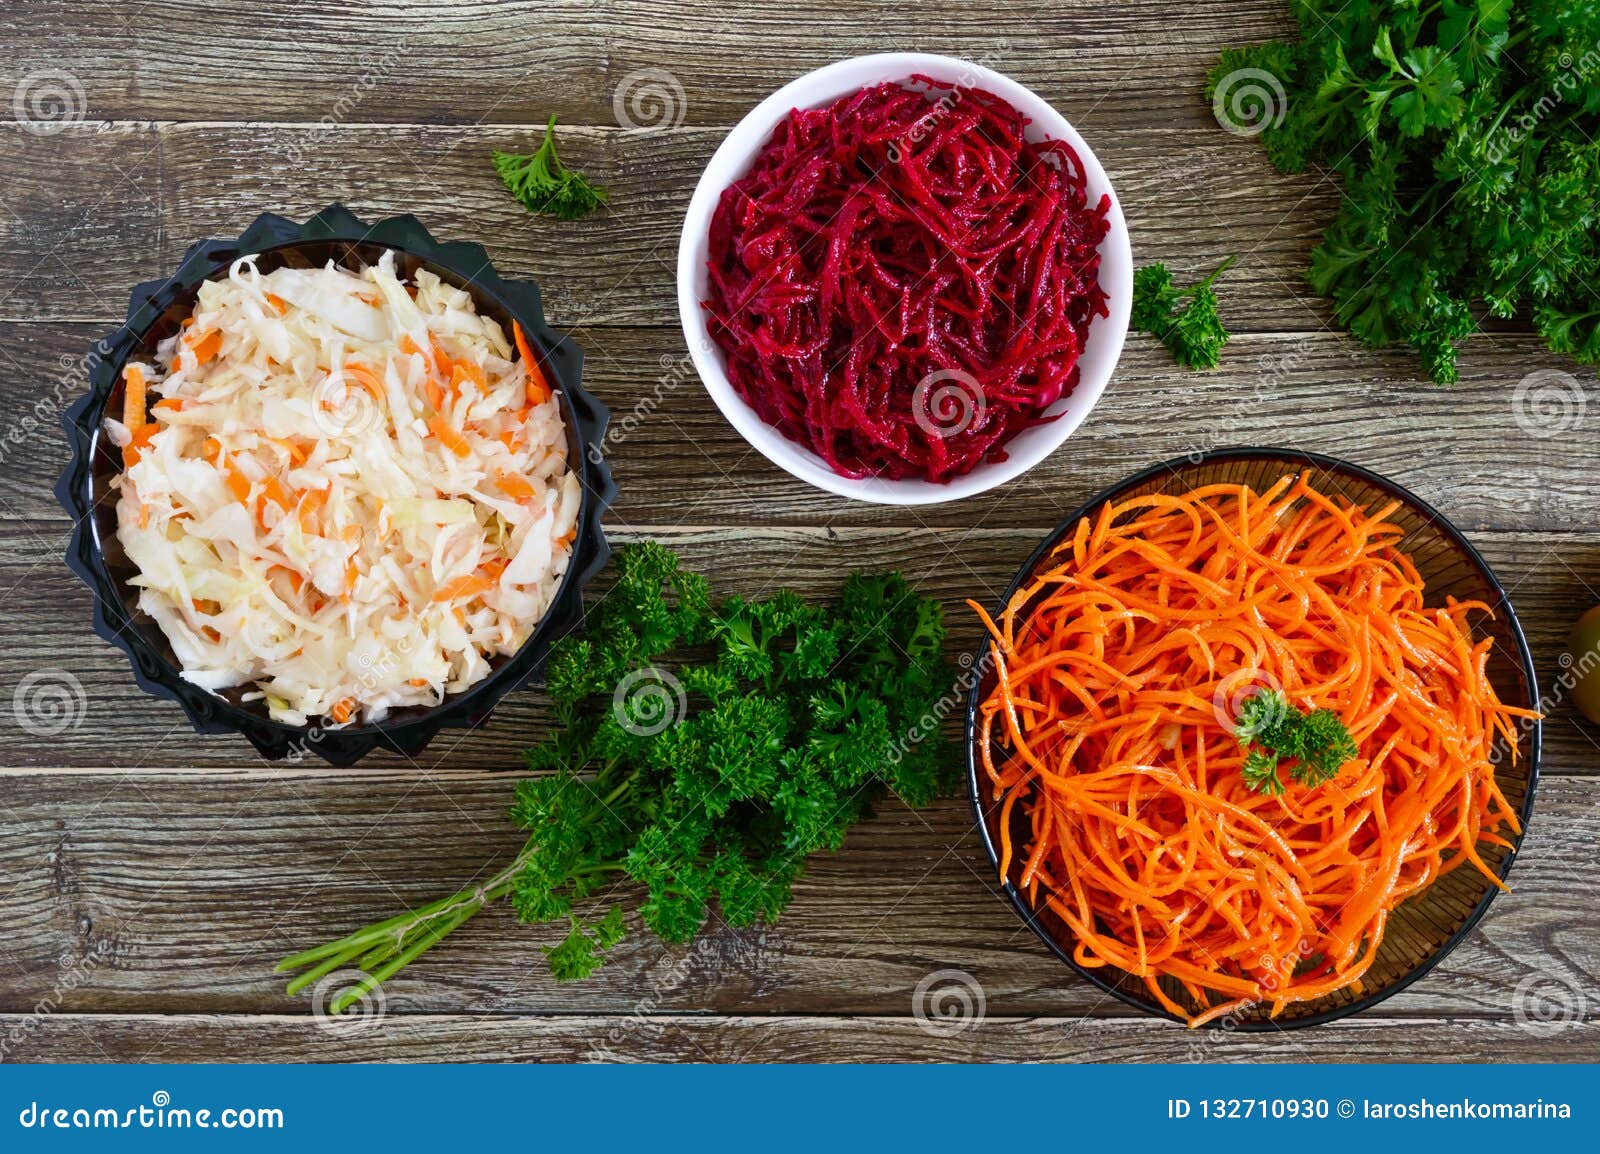 Салат из капусты, свеклы и моркови. Пошаговый рецепт с фото